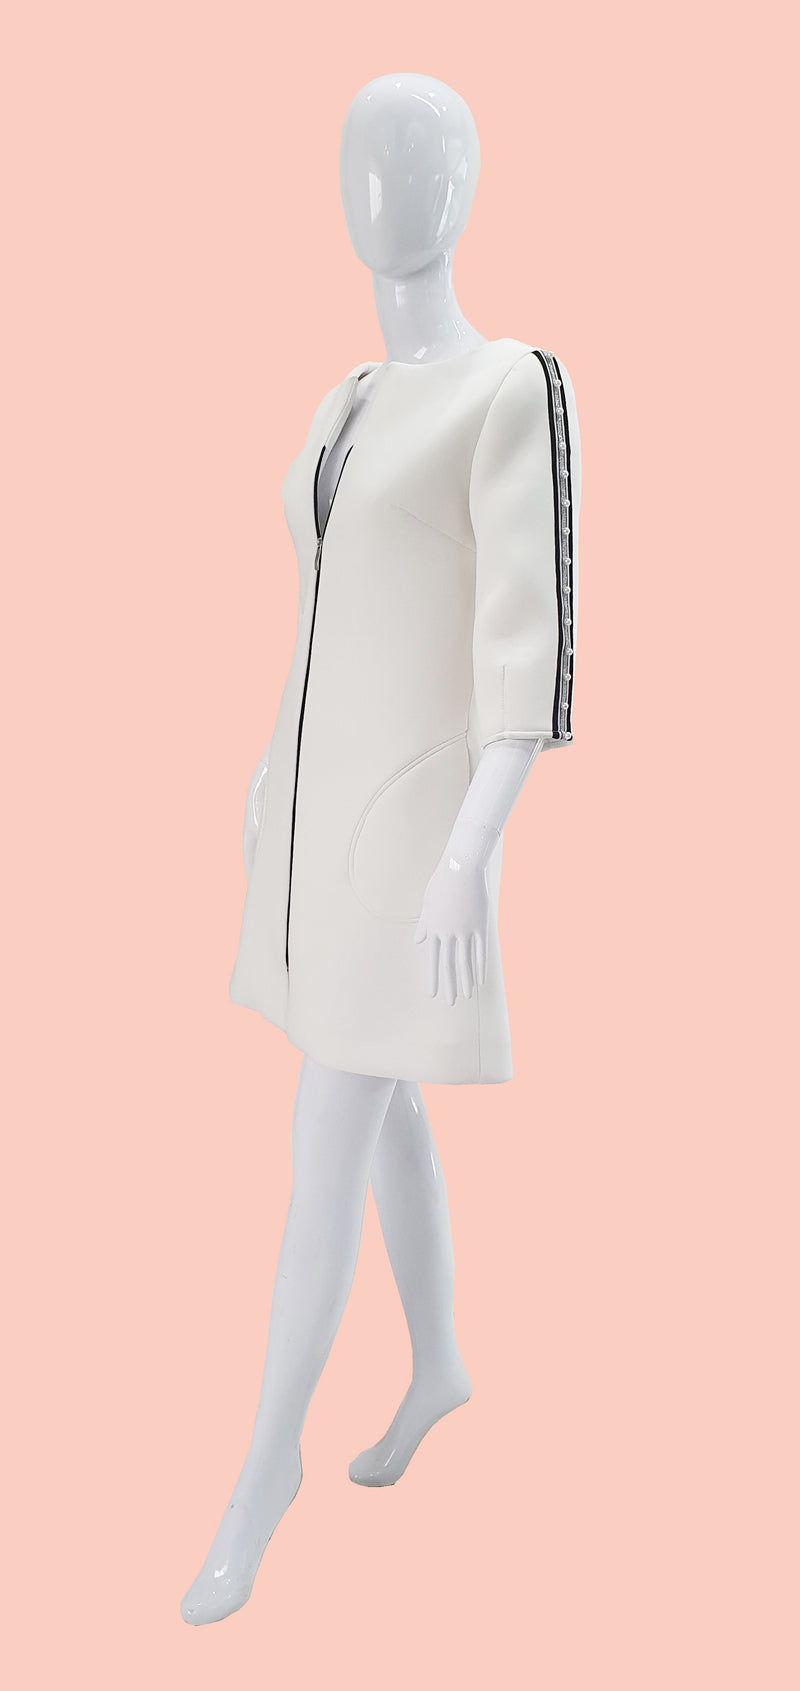 Trendy minidress style coat